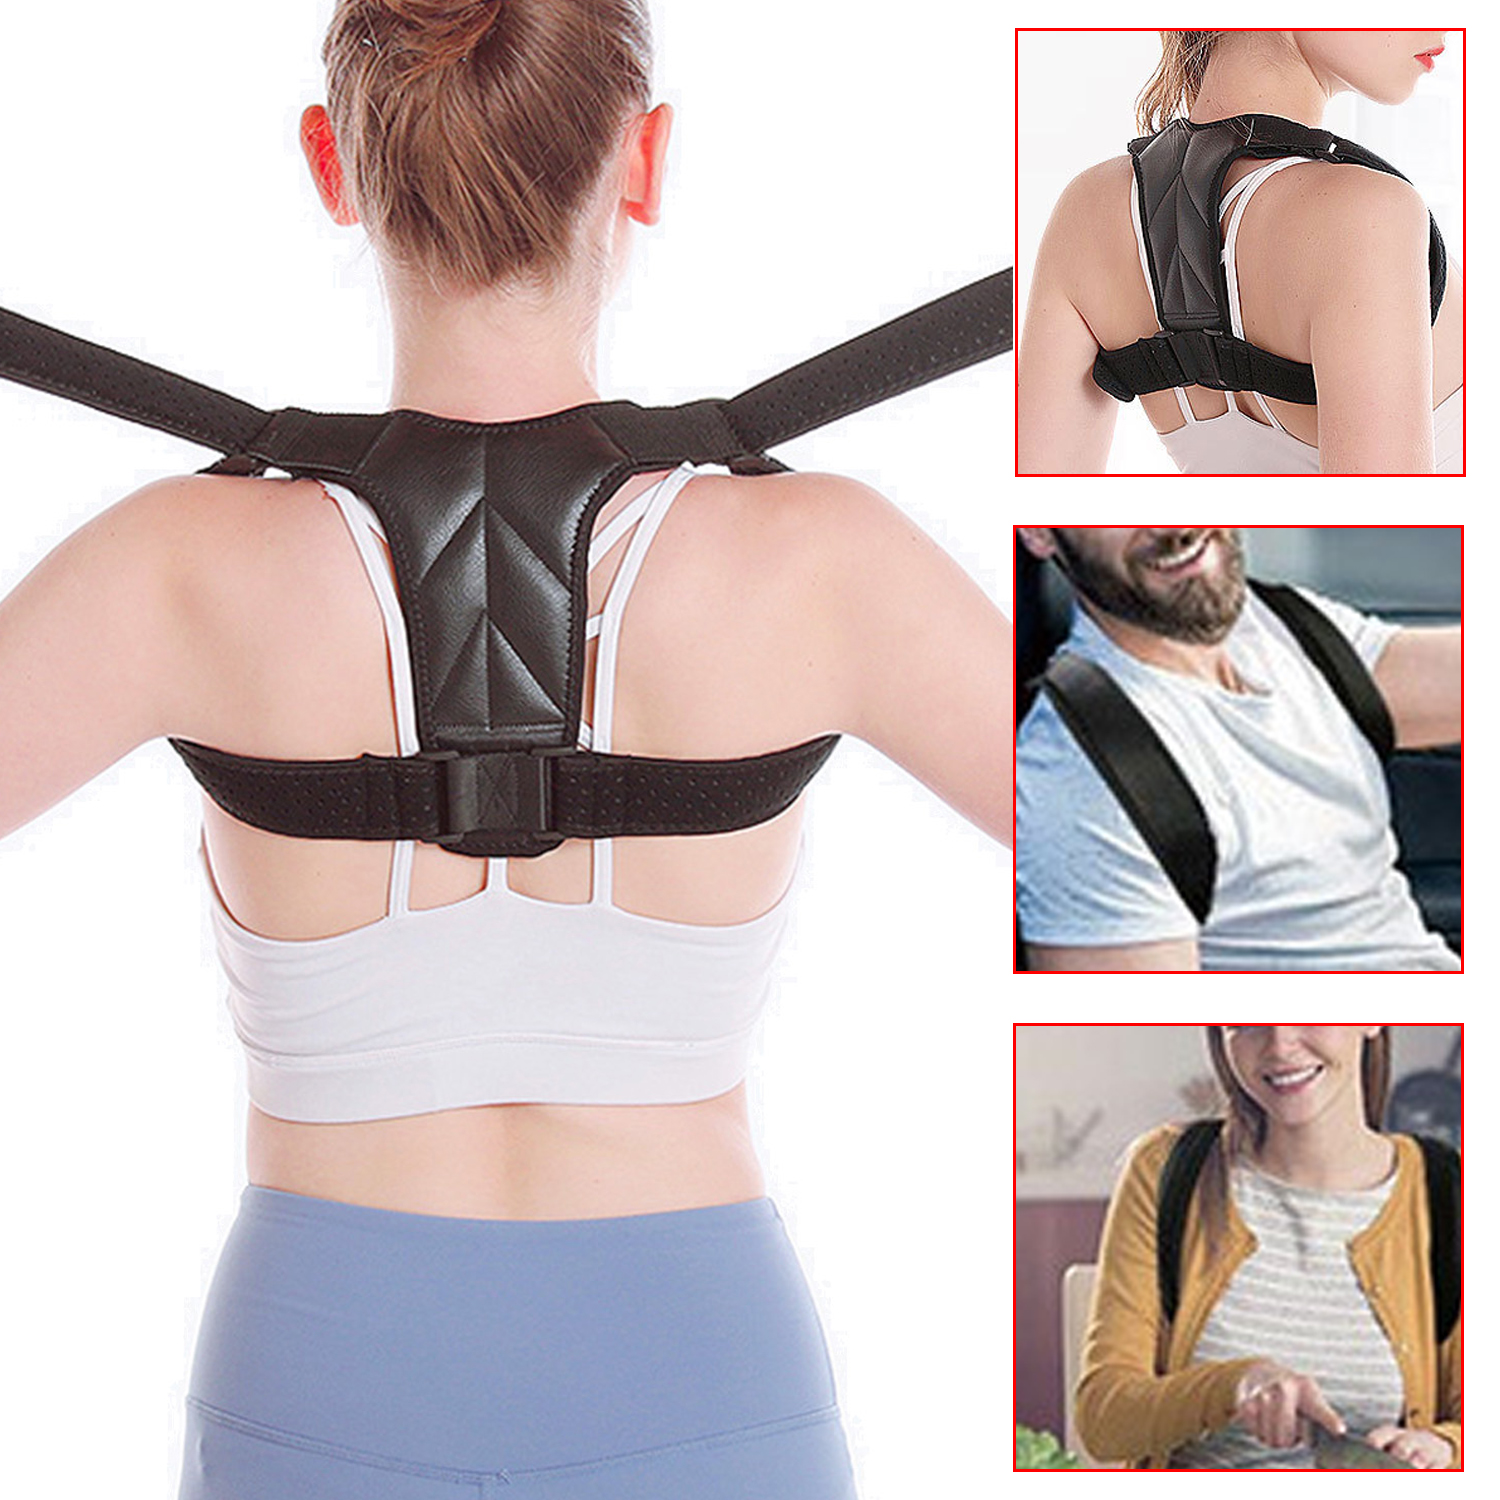 Corrector de postura de espalda, soporte ajustable para hombros, soporte para clavícula superior